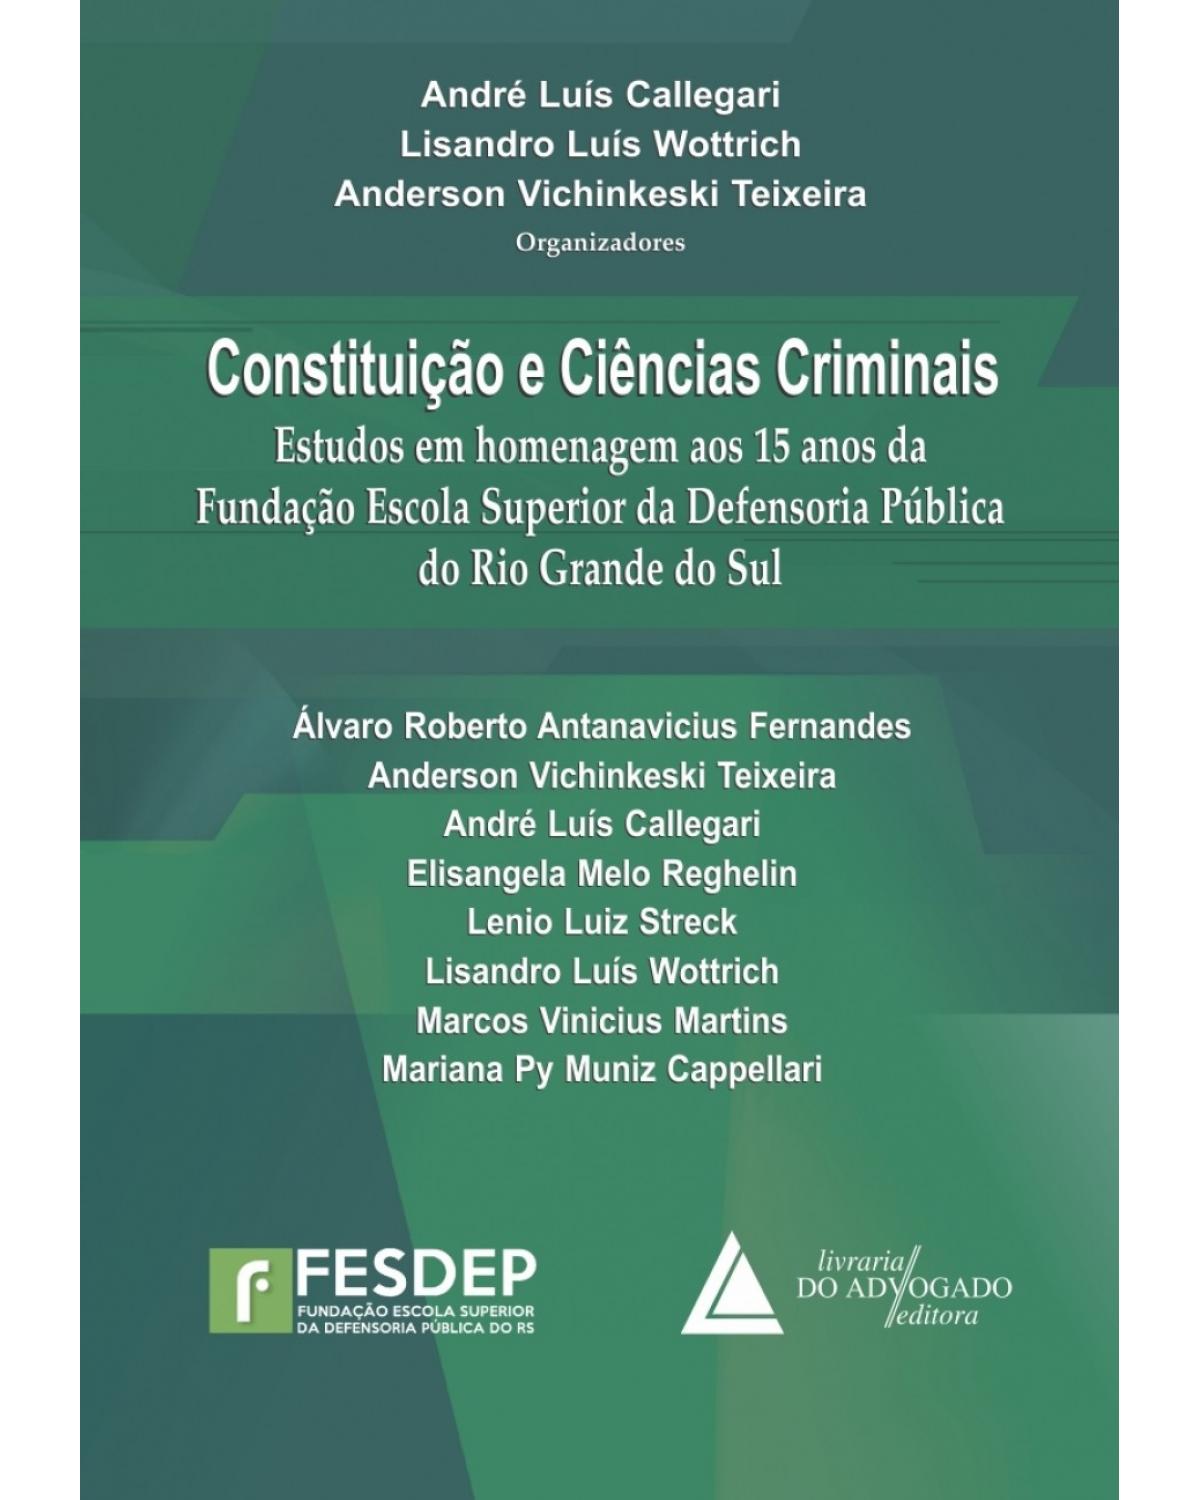 Constituição e ciências criminais: Estudos em homenagem aos 15 anos da Fundação Escola Superior da Defensoria Pública do Rio Grande do Sul - 1ª Edição | 2015